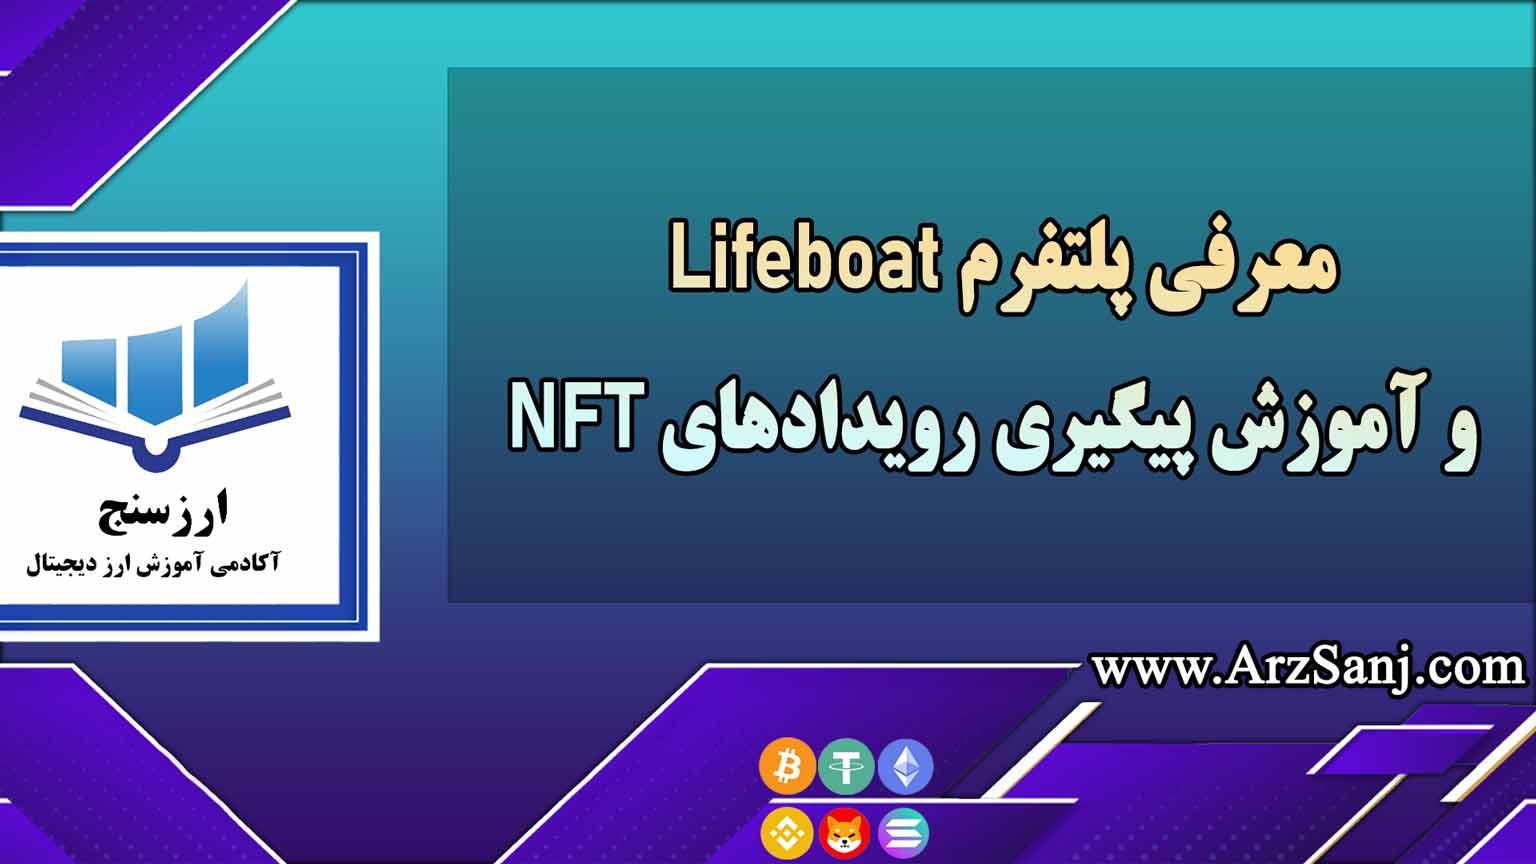 معرفی پلتفرم Lifeboat و آموزش پیگیری رویدادهای NFT